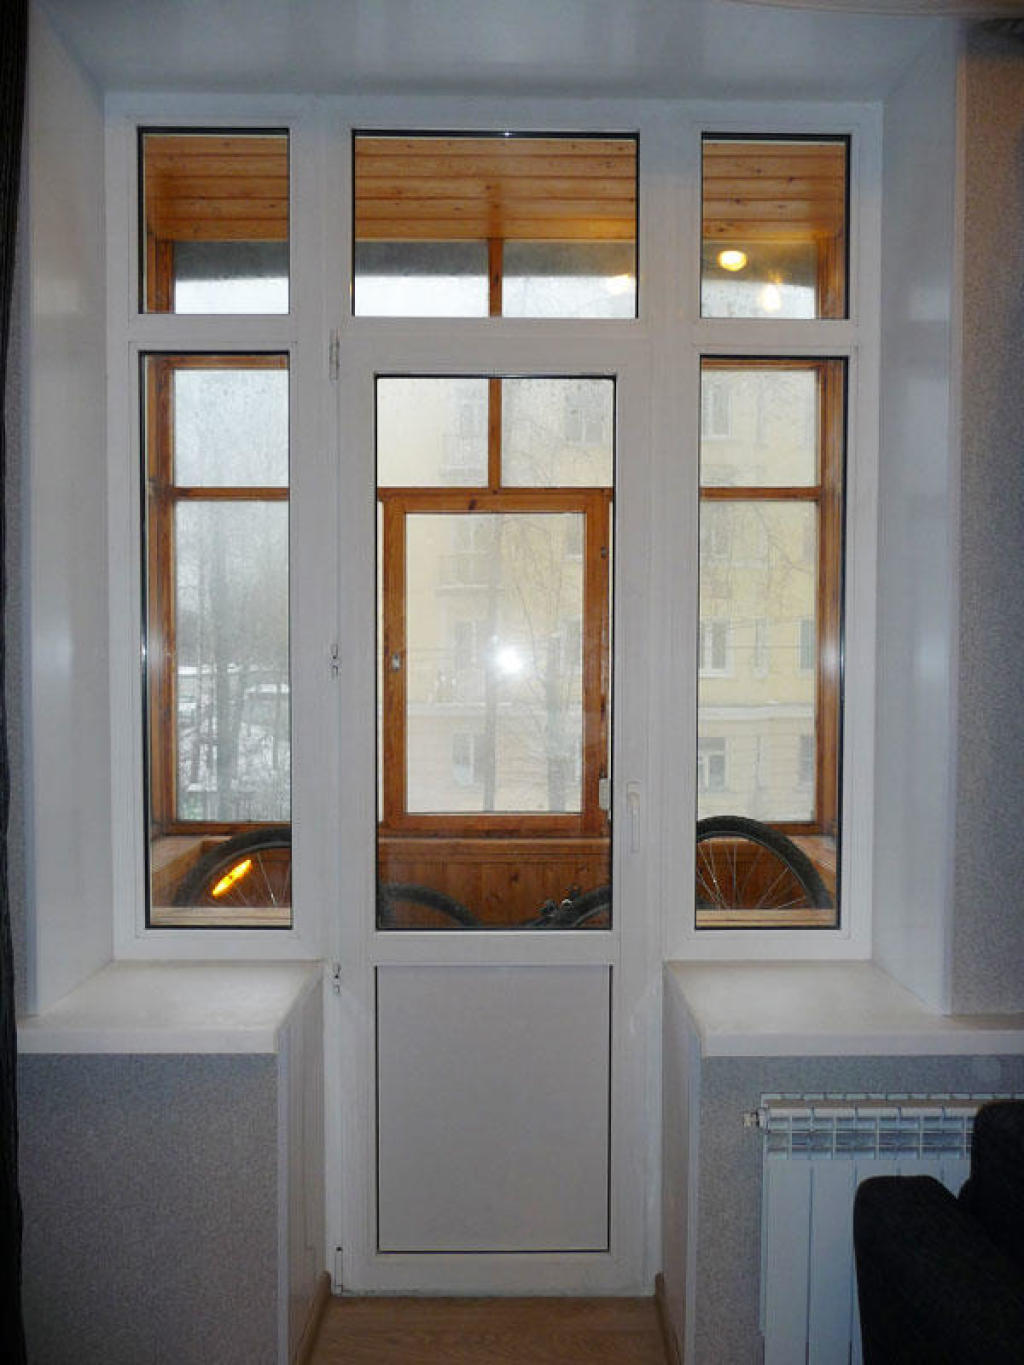 Балконный блок - примеры работ компании киев окна фирма.